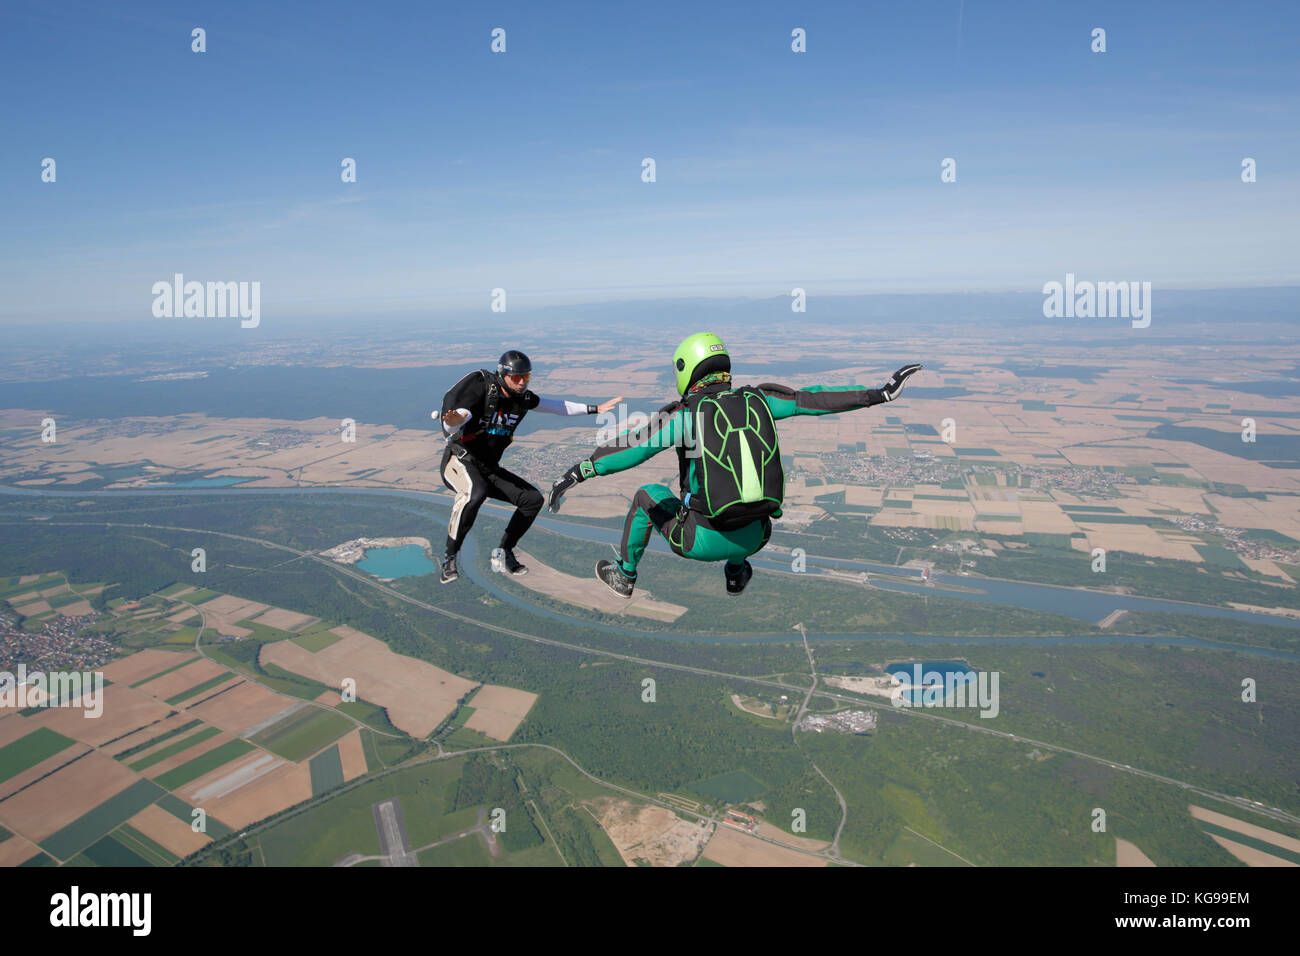 Questo freefly skydiving team training è la posizione di sedersi insieme. È divertente da volare intorno a ogni altro alto nel cielo. Foto Stock